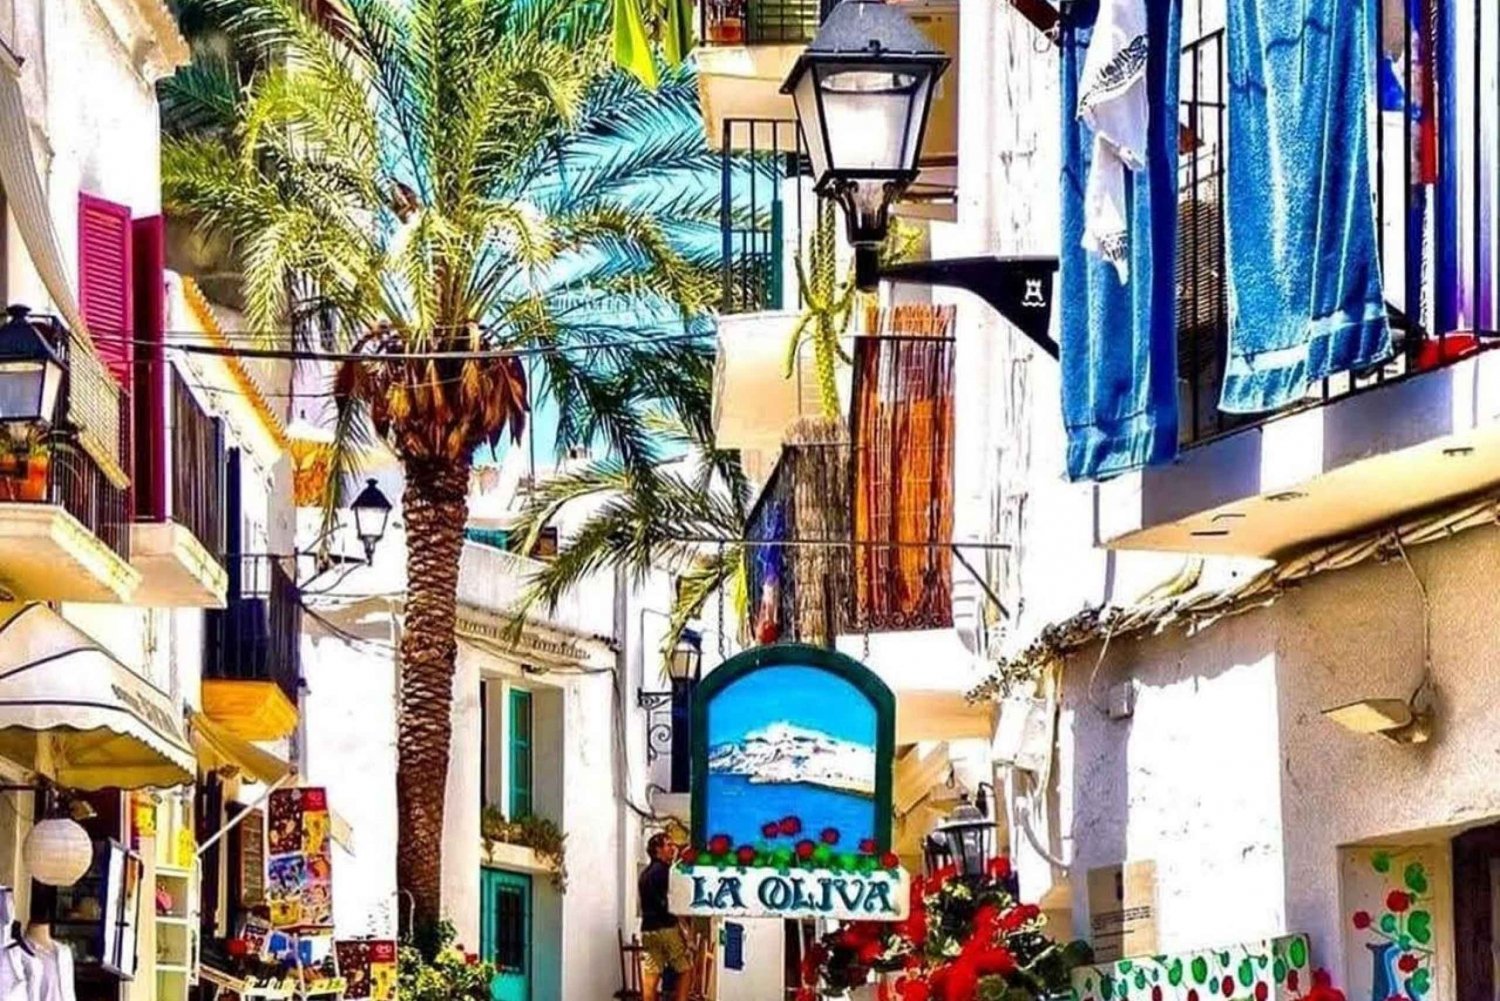 Ibiza: Gamla stan guidad tur med en lokal